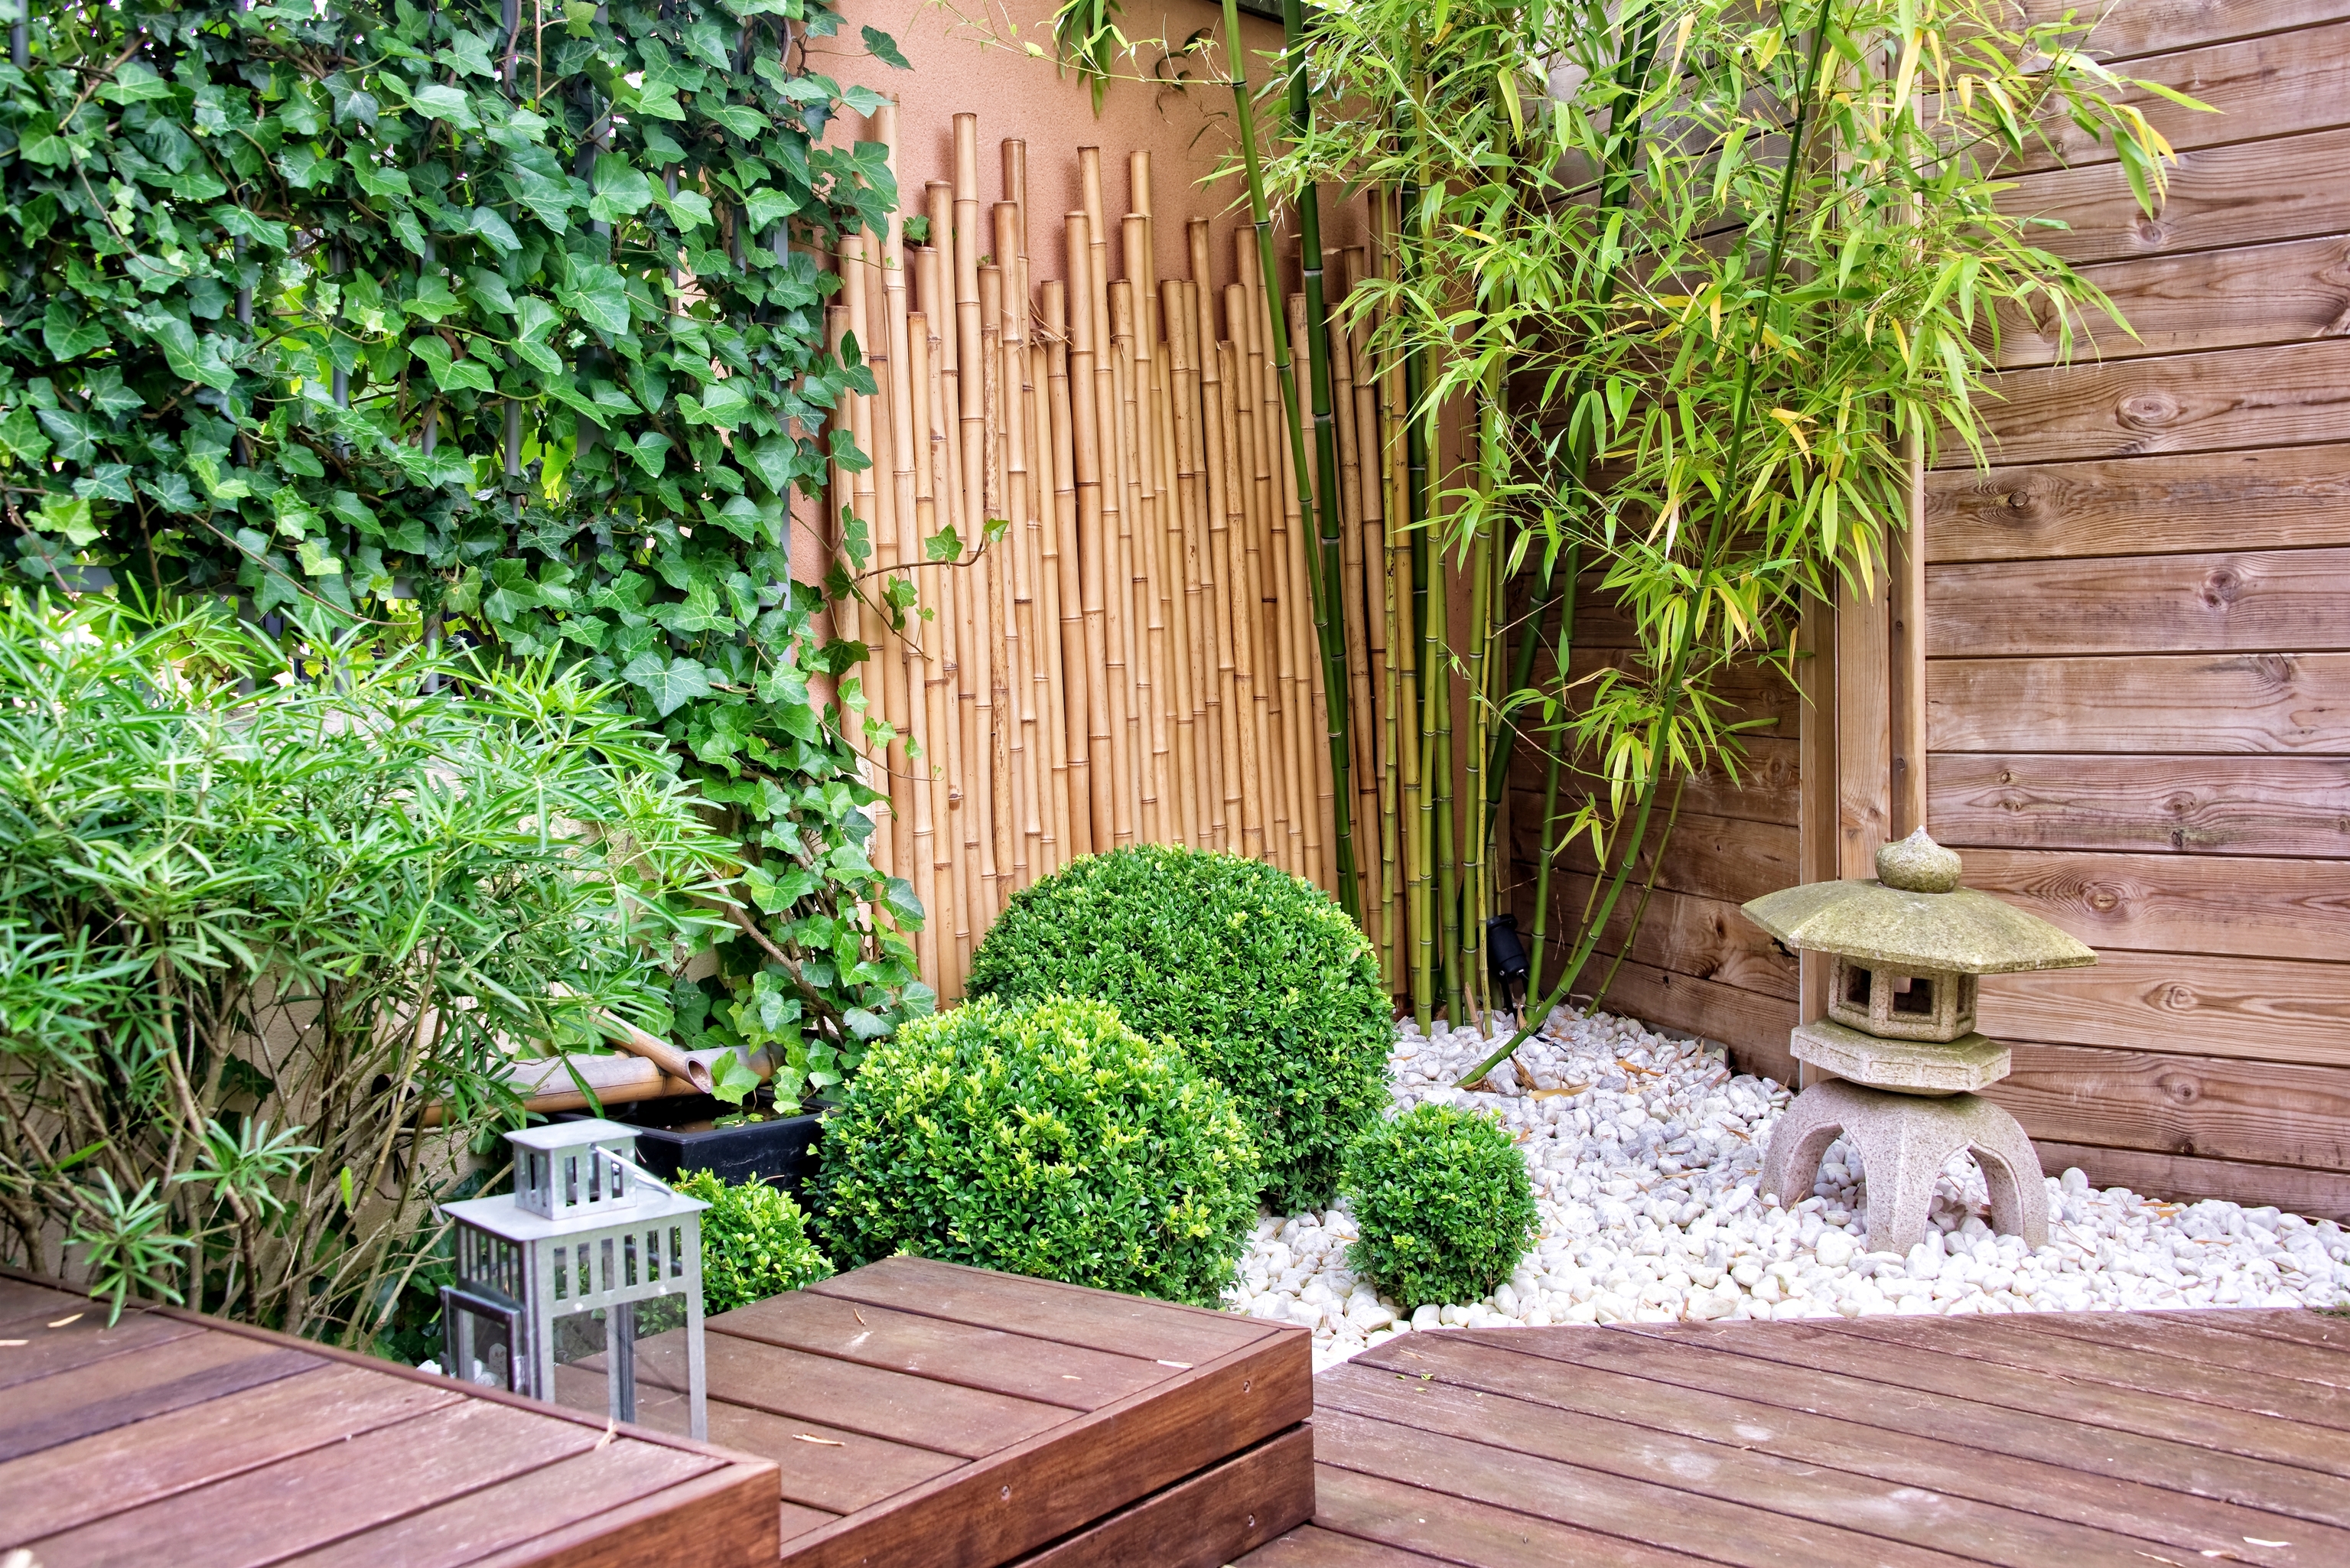 PLANTA ARTIFICIAL BAMBÚ – Tu marca de Jardín, Cultivo y Decoración